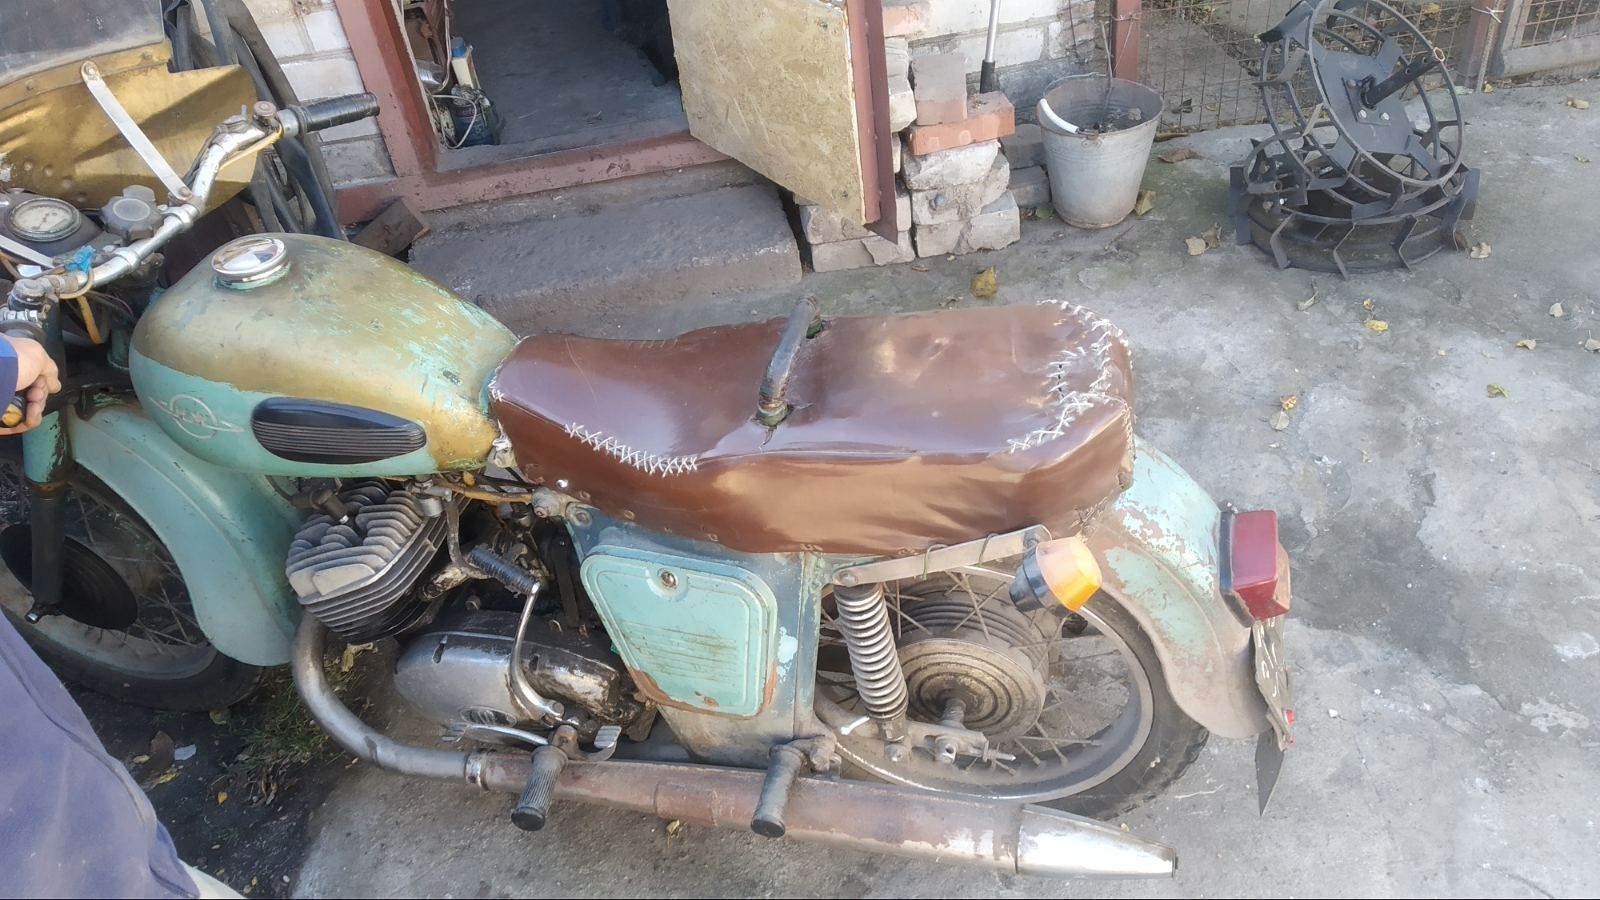 Продається мотоцикл з коляскою Іж -Юка -66 року